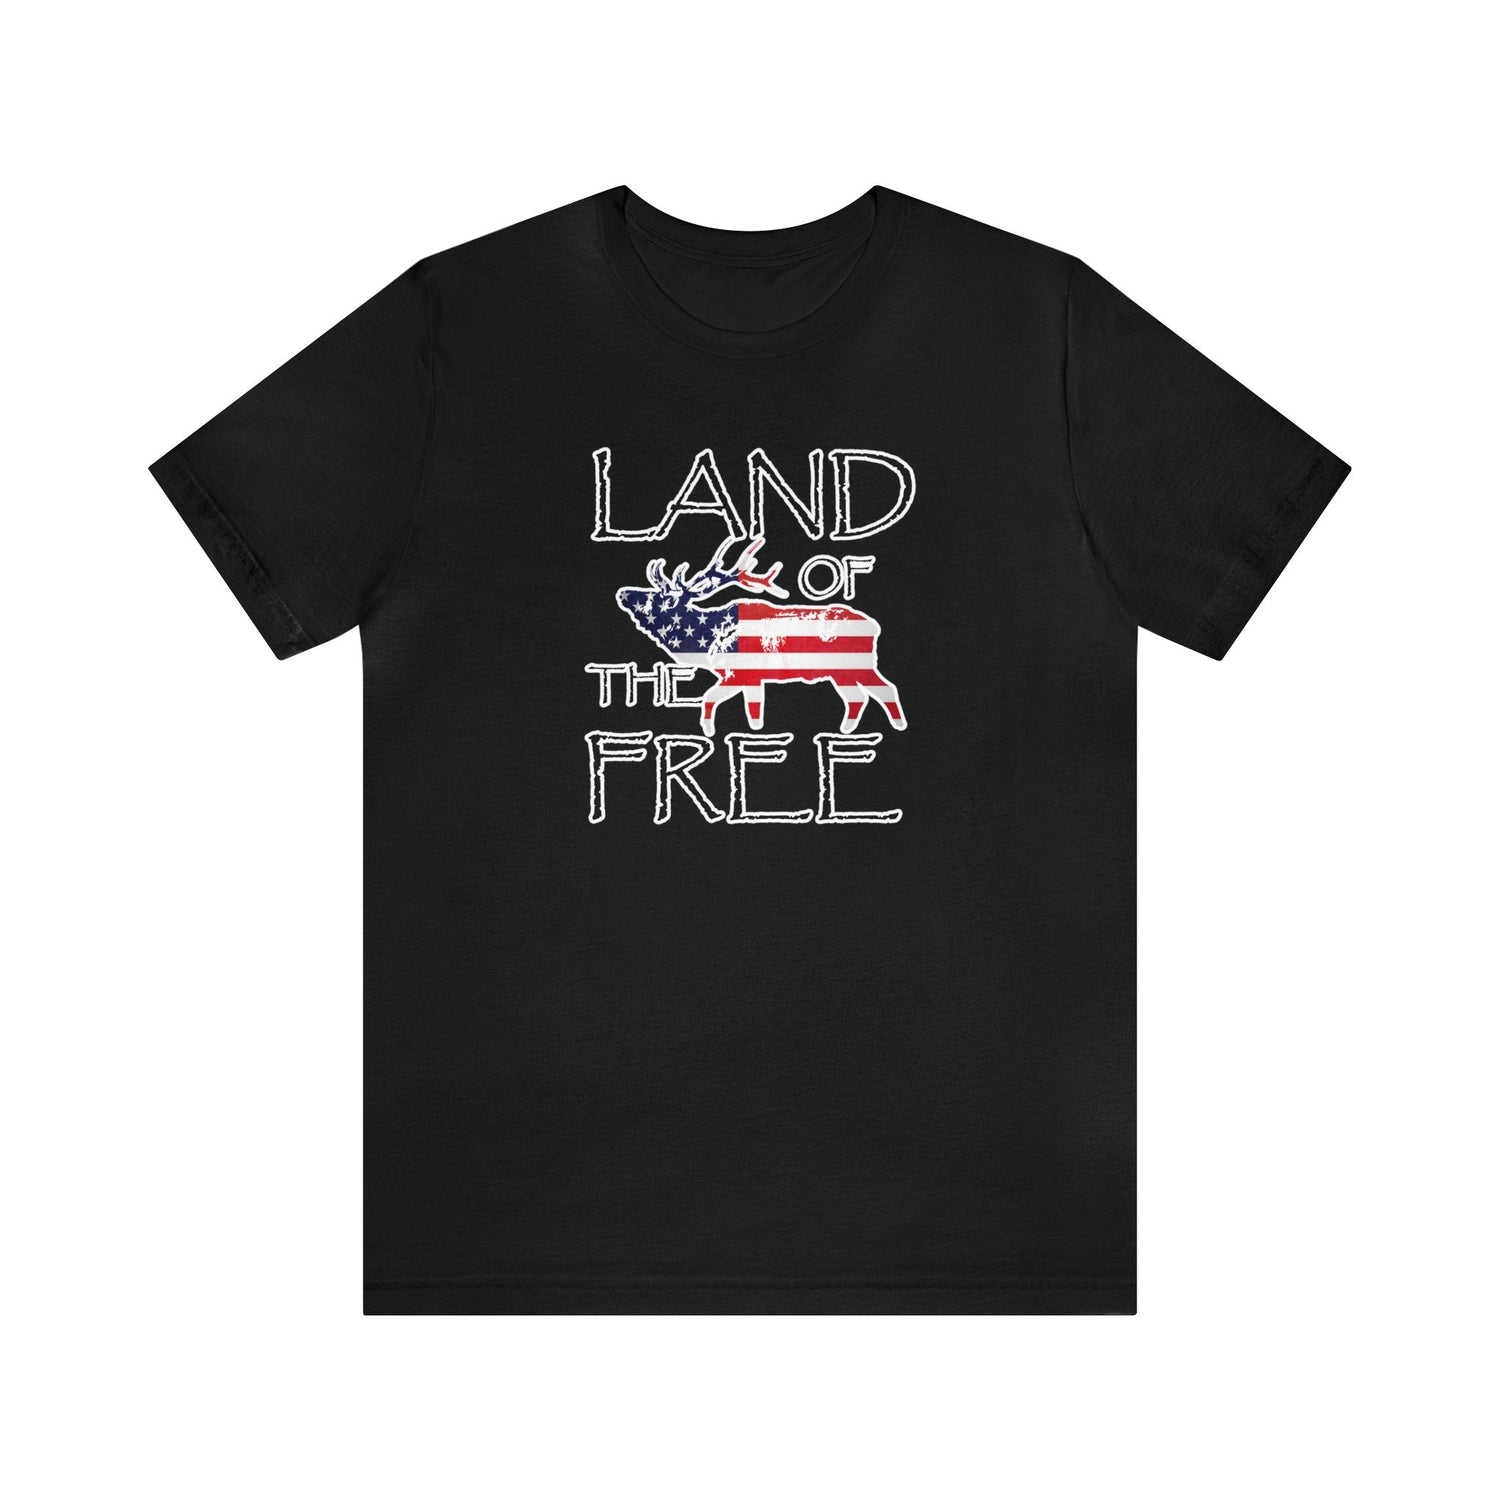 Western elk hunting t-shirt, color black, front design placement